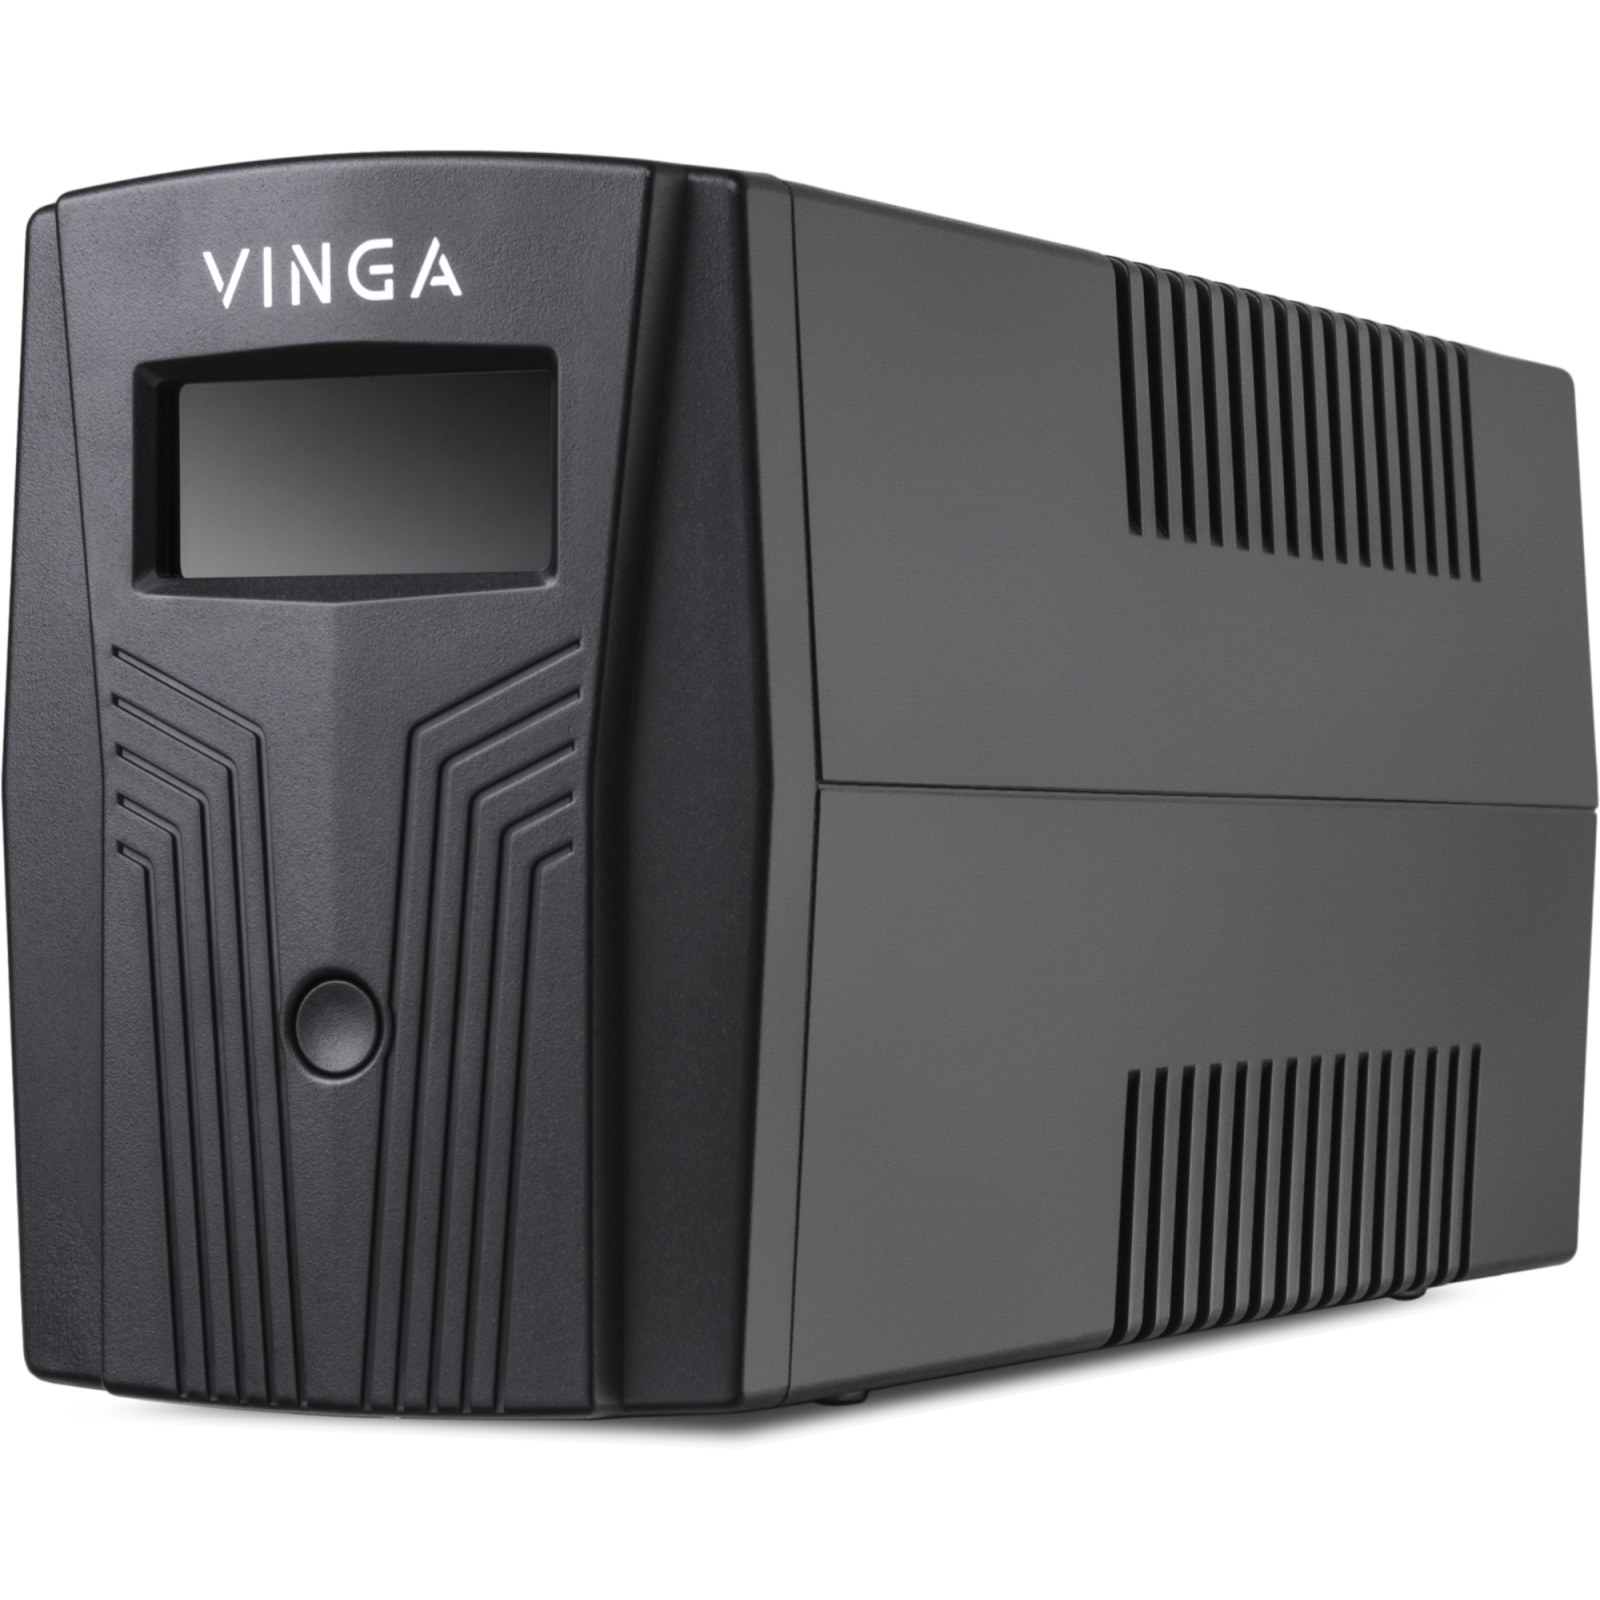 Источник бесперебойного питания Vinga LCD 1500VA plastic case (VPC-1500P) изображение 7